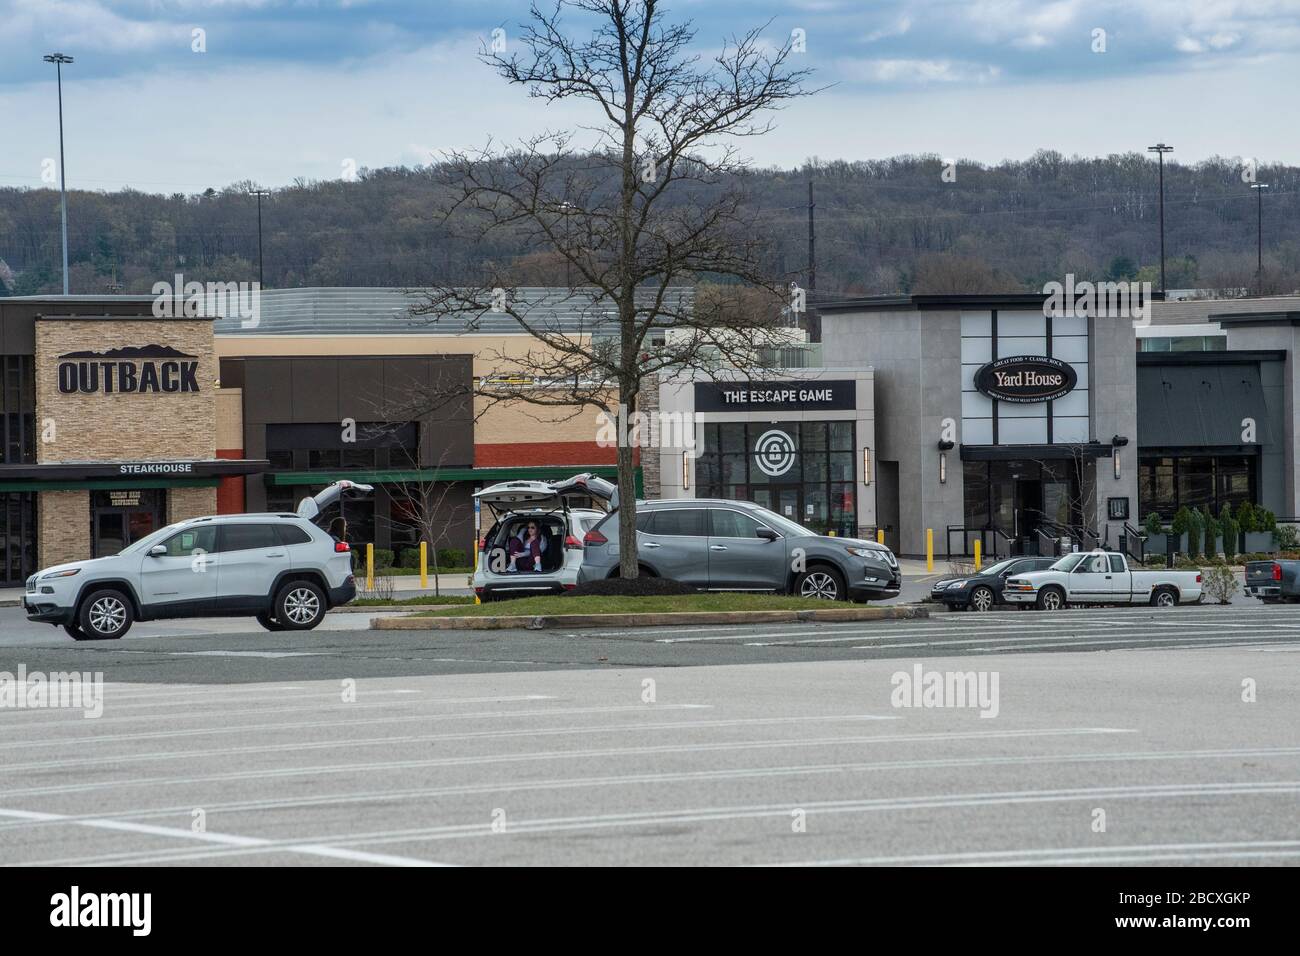 Menschen, die aufgrund von Coronavirus Covid-19 auf dem Parkplatz der geschlossenen King of Prussia Mall, Pennsylvania, USA, eine sichere soziale Distanzierung praktizieren Stockfoto